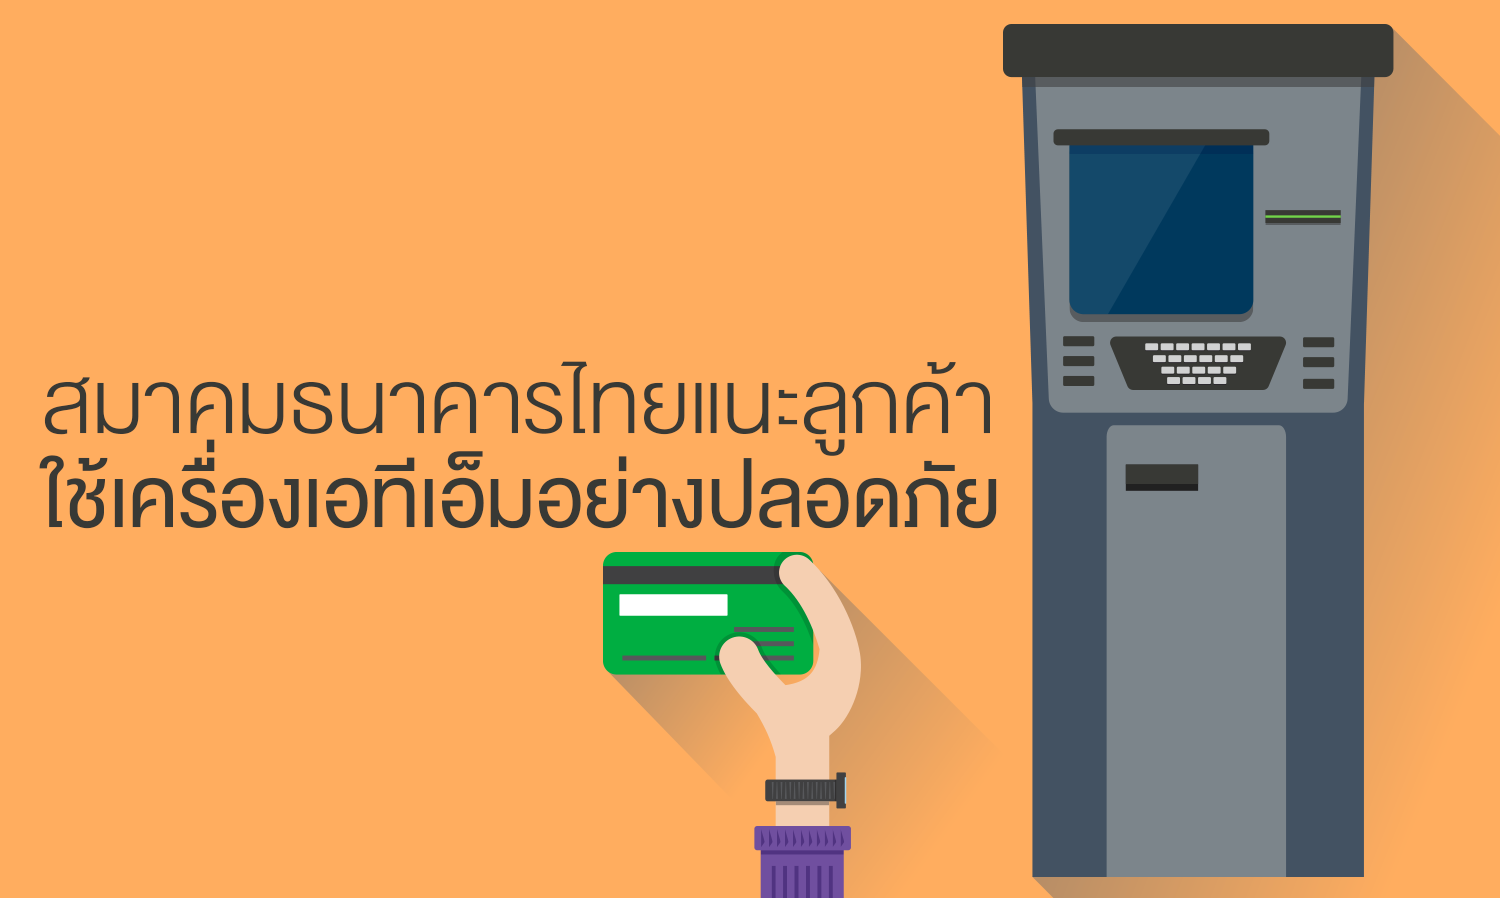 สมาคมธนาคารไทยแนะลูกค้าใช้เครื่องเอทีเอ็มอย่างปลอดภัย